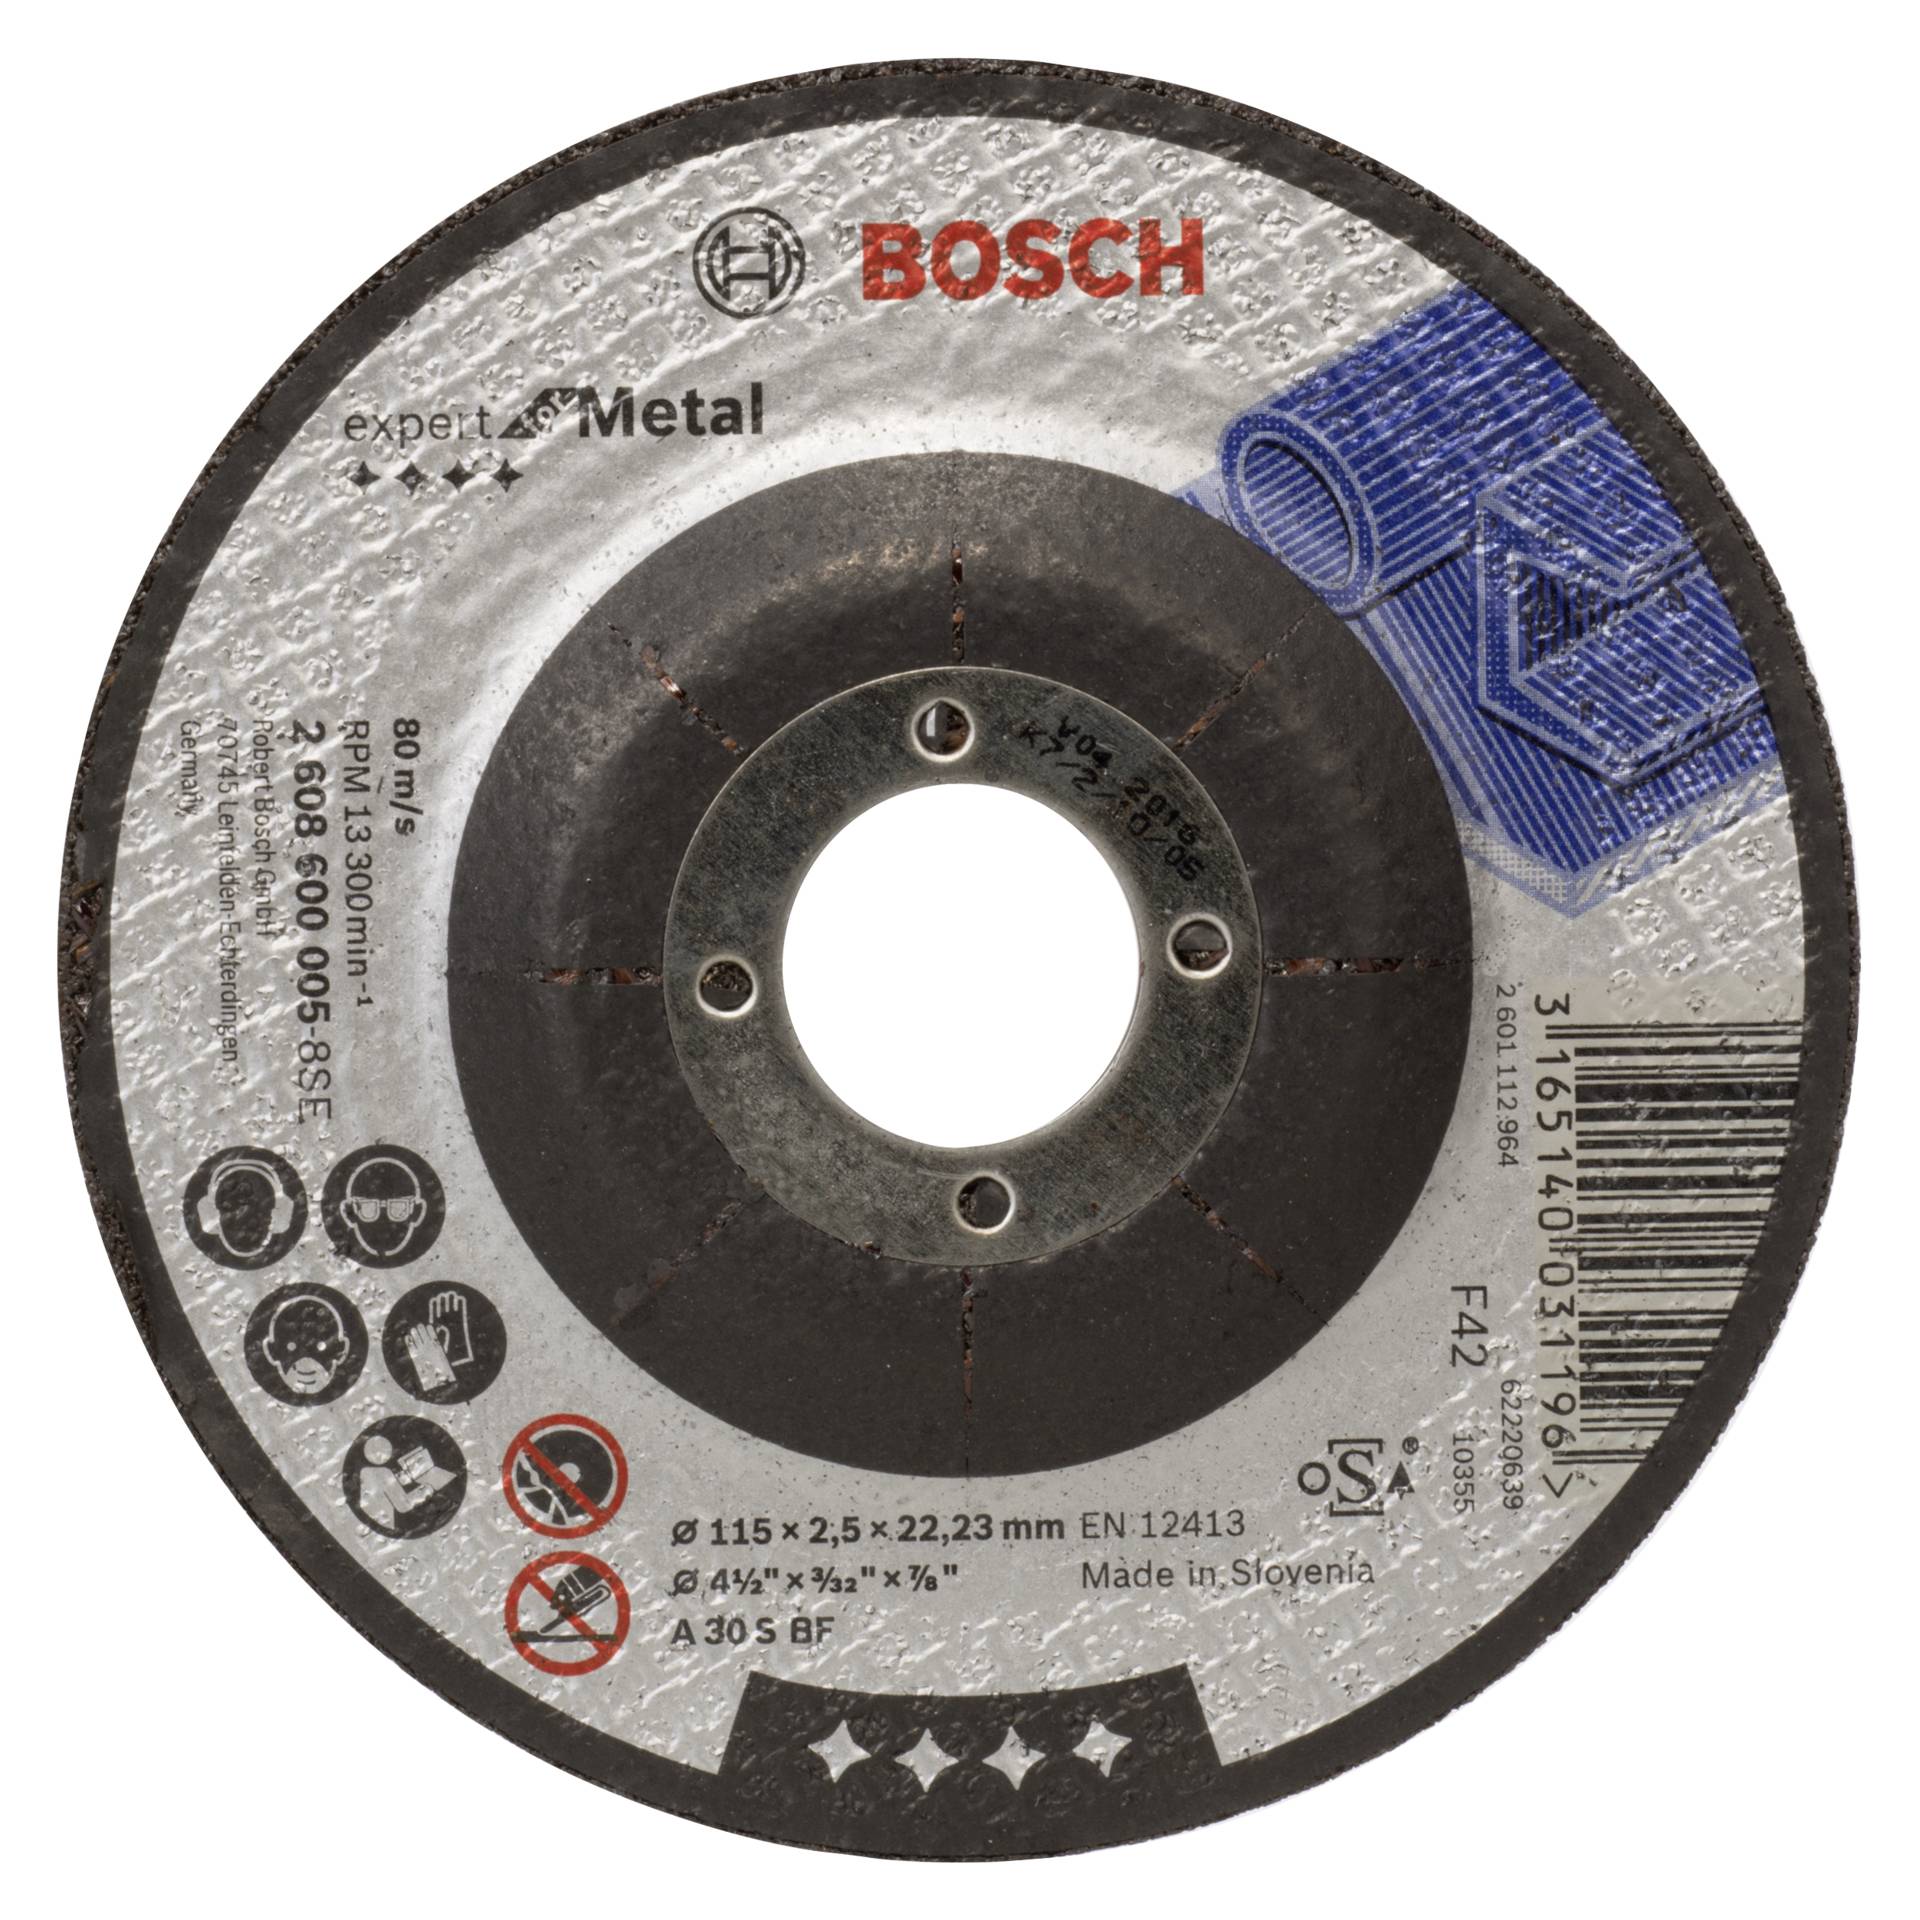 Bosch disco da taglio a centro depresso 115x2,5 mm per metal